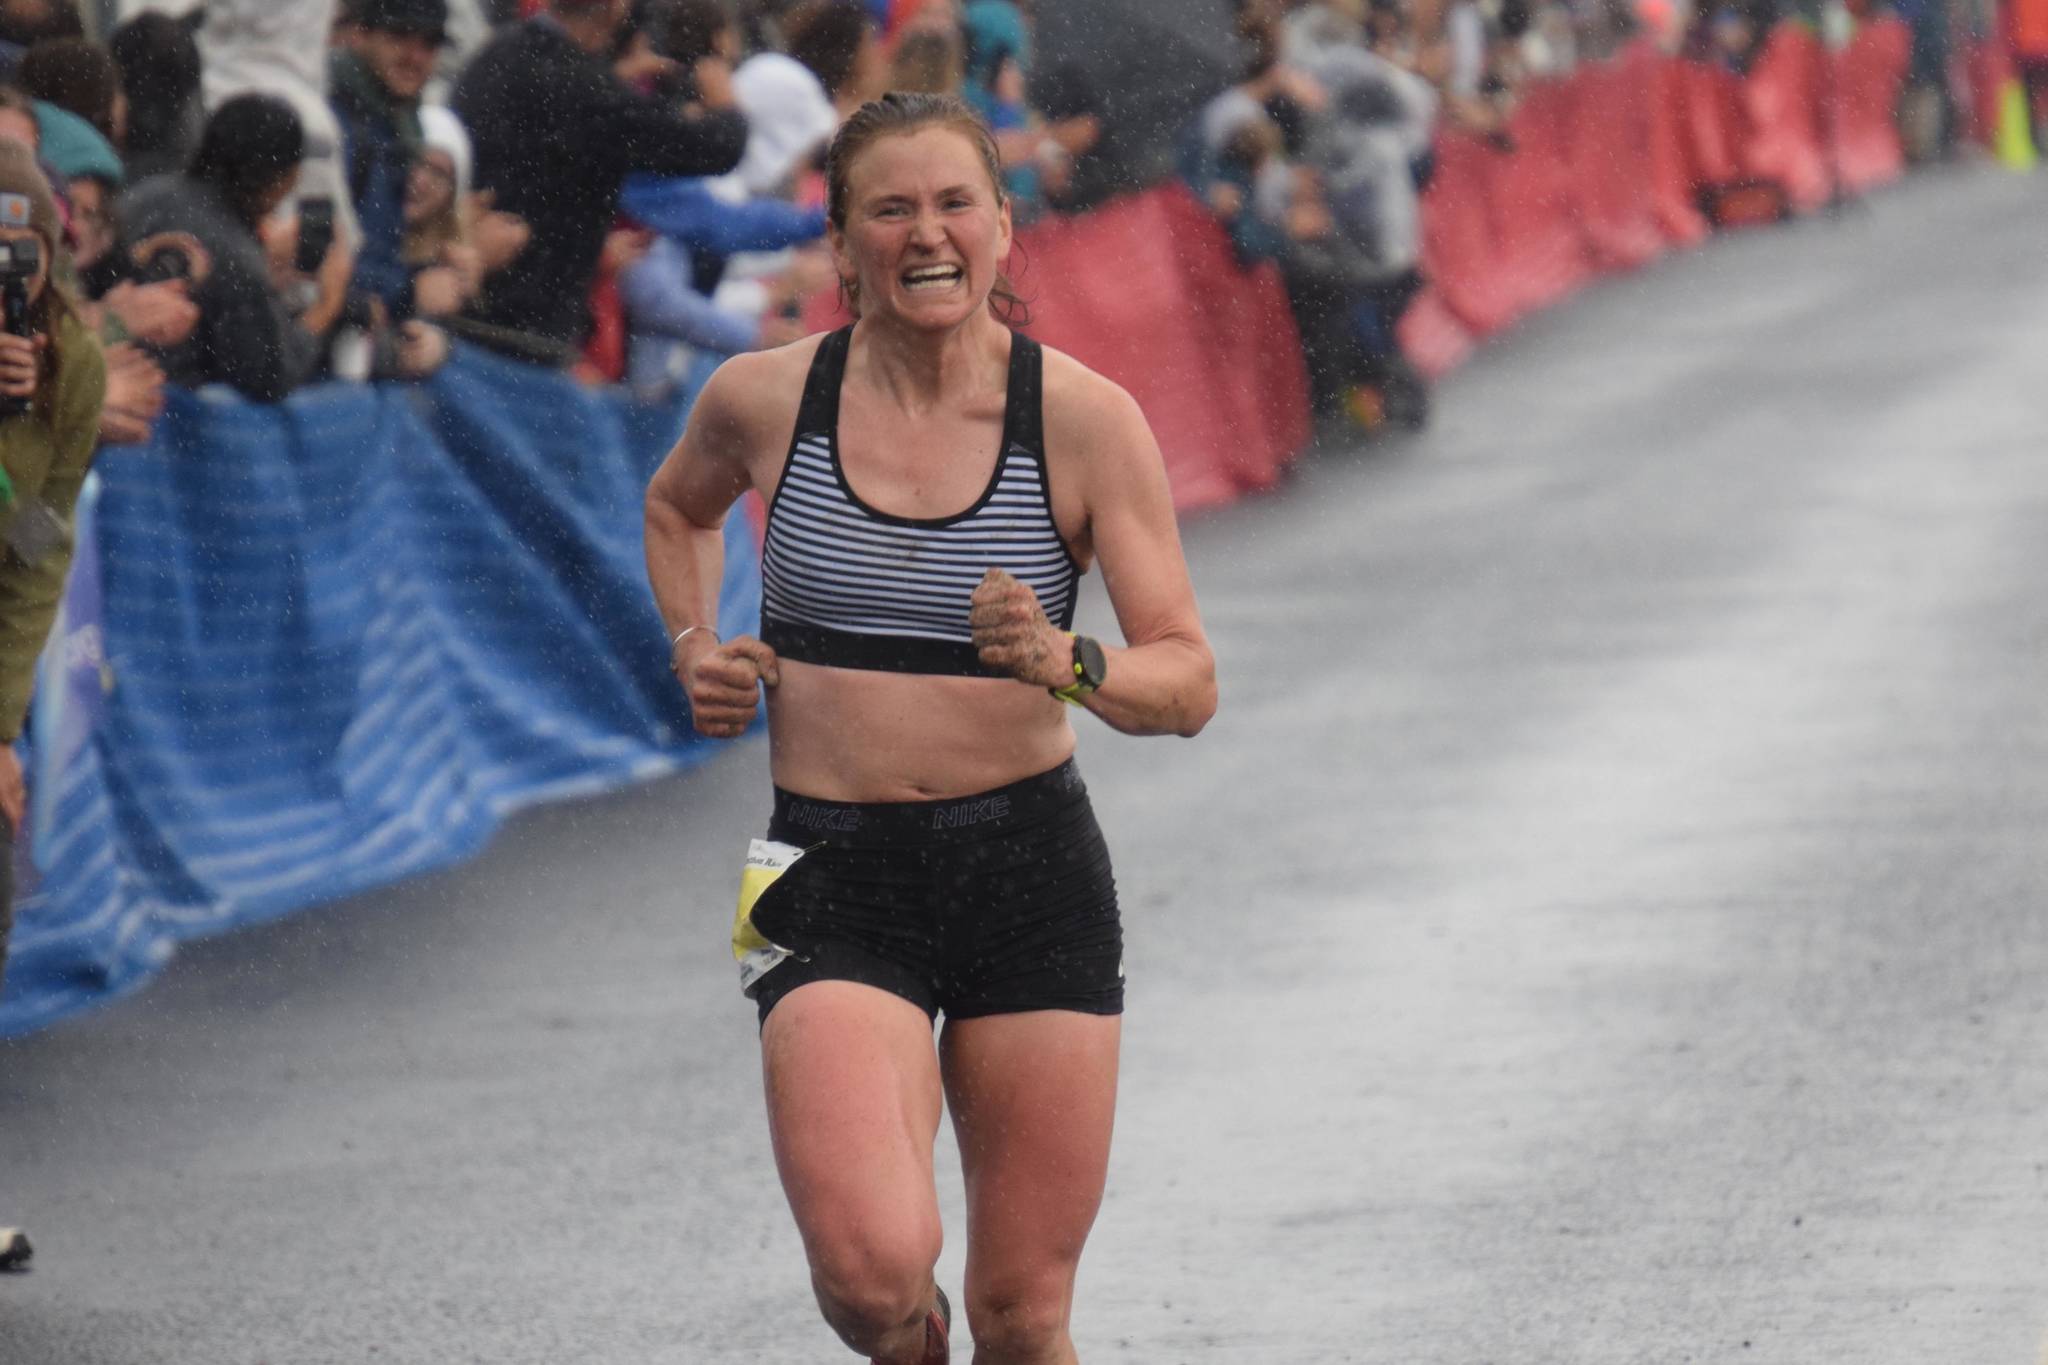 Hannah Lafleur, 32, of Seward defends her title in the women's Mount Marathon Race in Seward, Alaska, on Wednesday, July 7, 2021. (Photo by Jeff Helminiak/Peninsula Clarion)